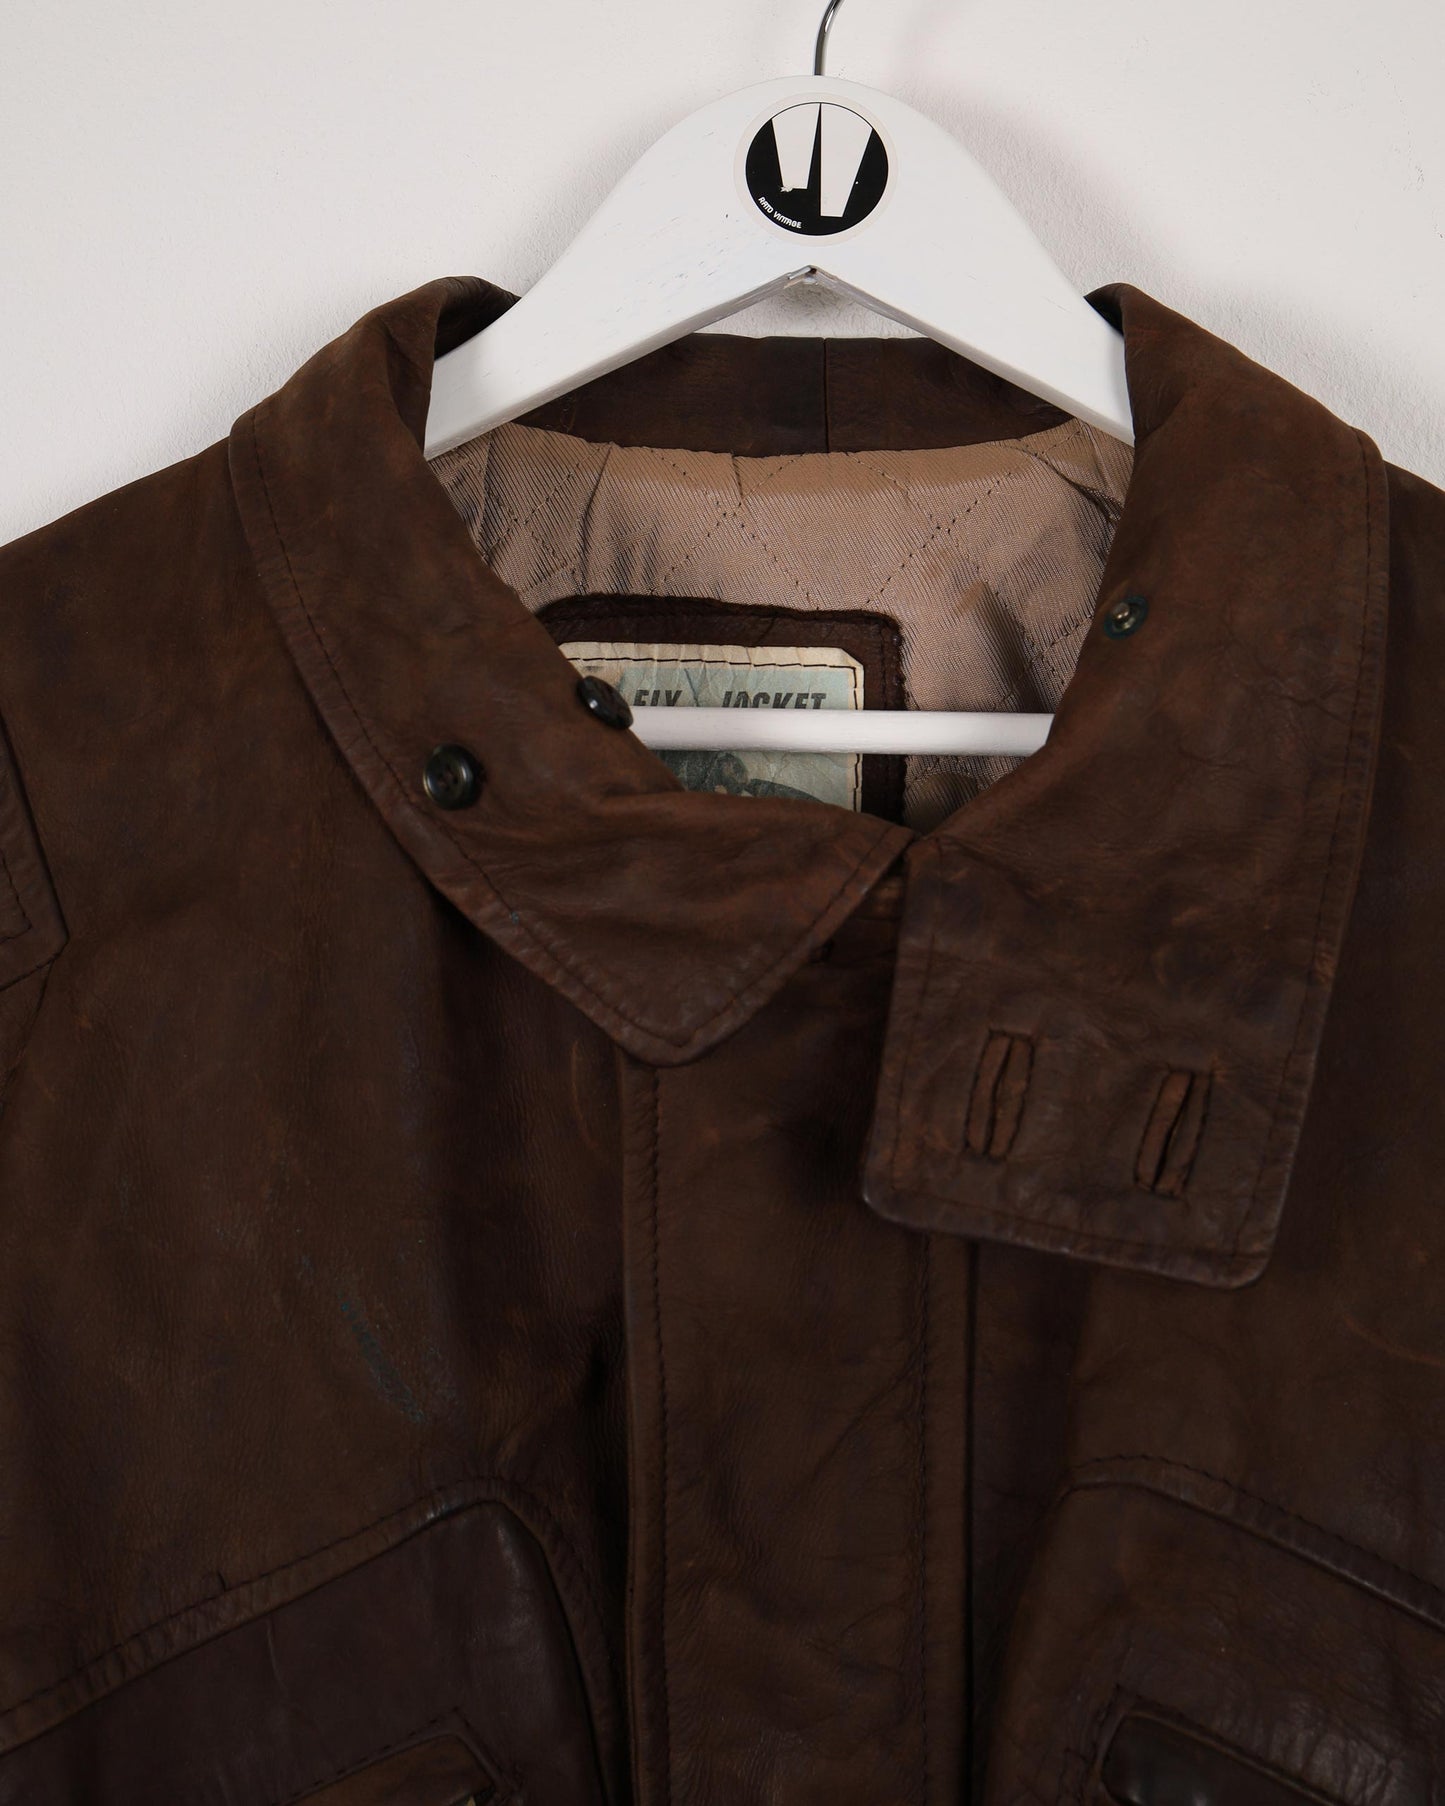 Giacca vintage da mosca, giacca in pelle bomber da aviatore con pelliccia sul collo rimovibile